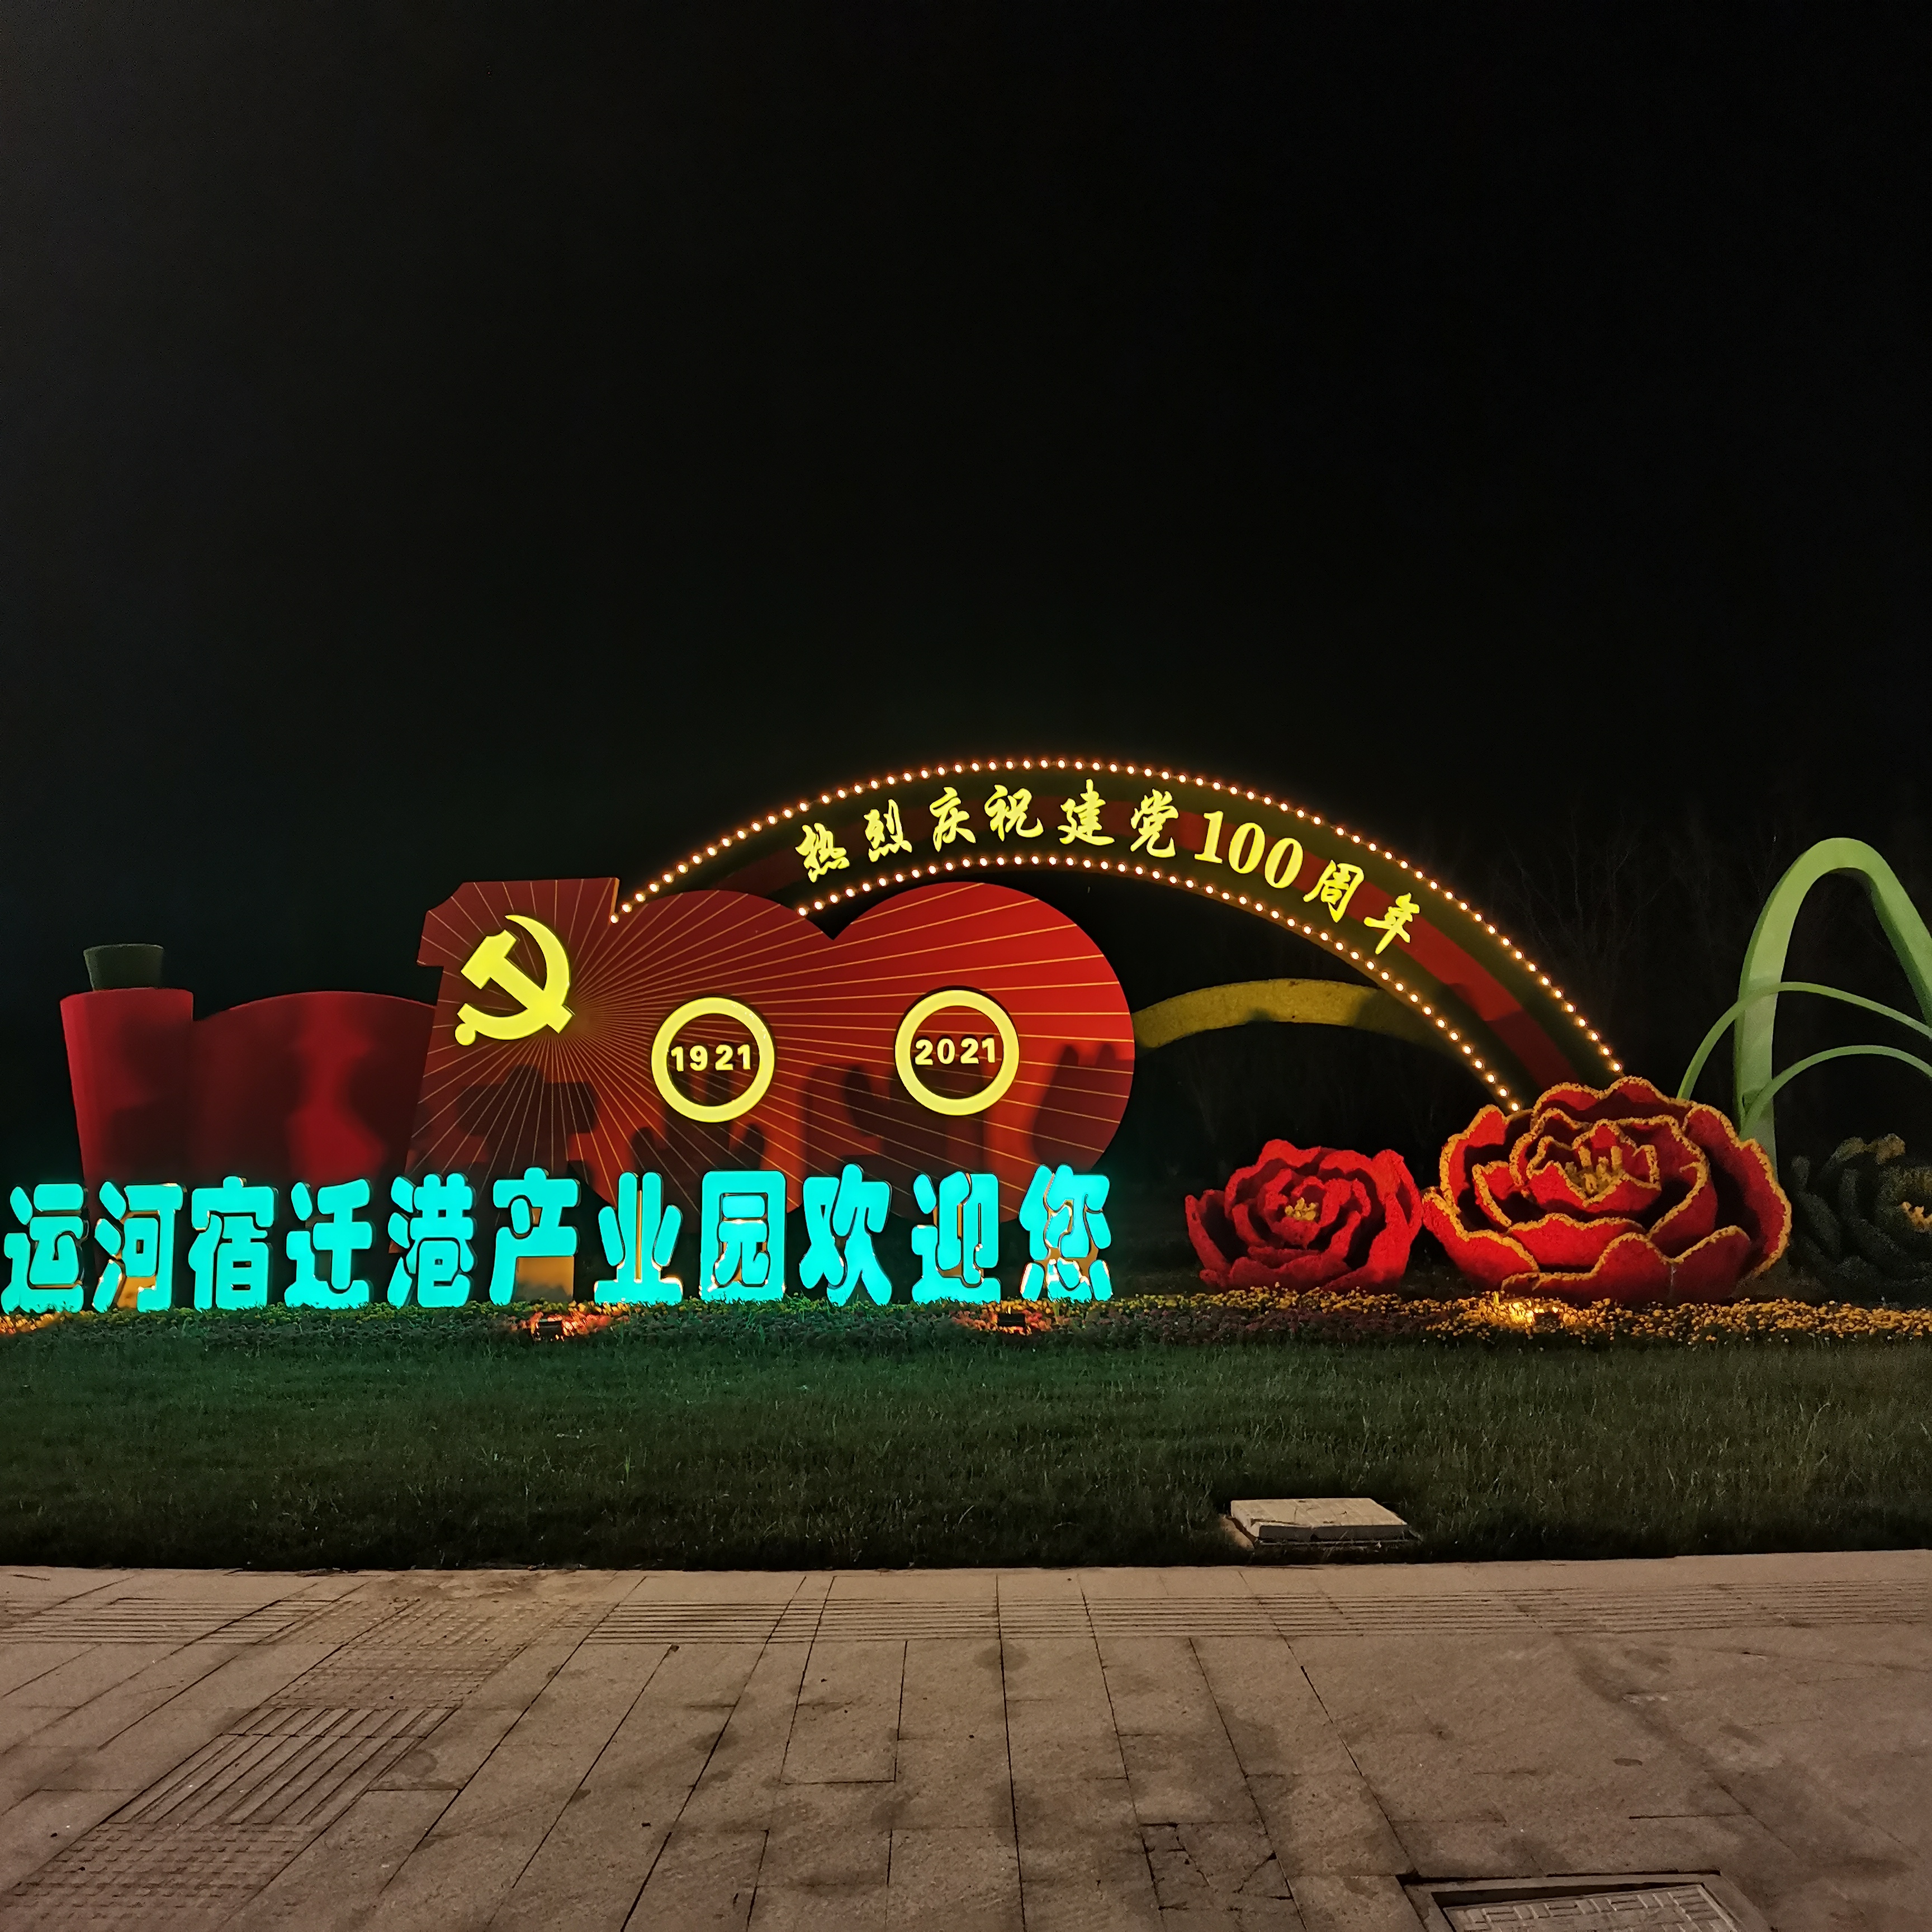 慶祝偉大的中國共產黨成立100周年